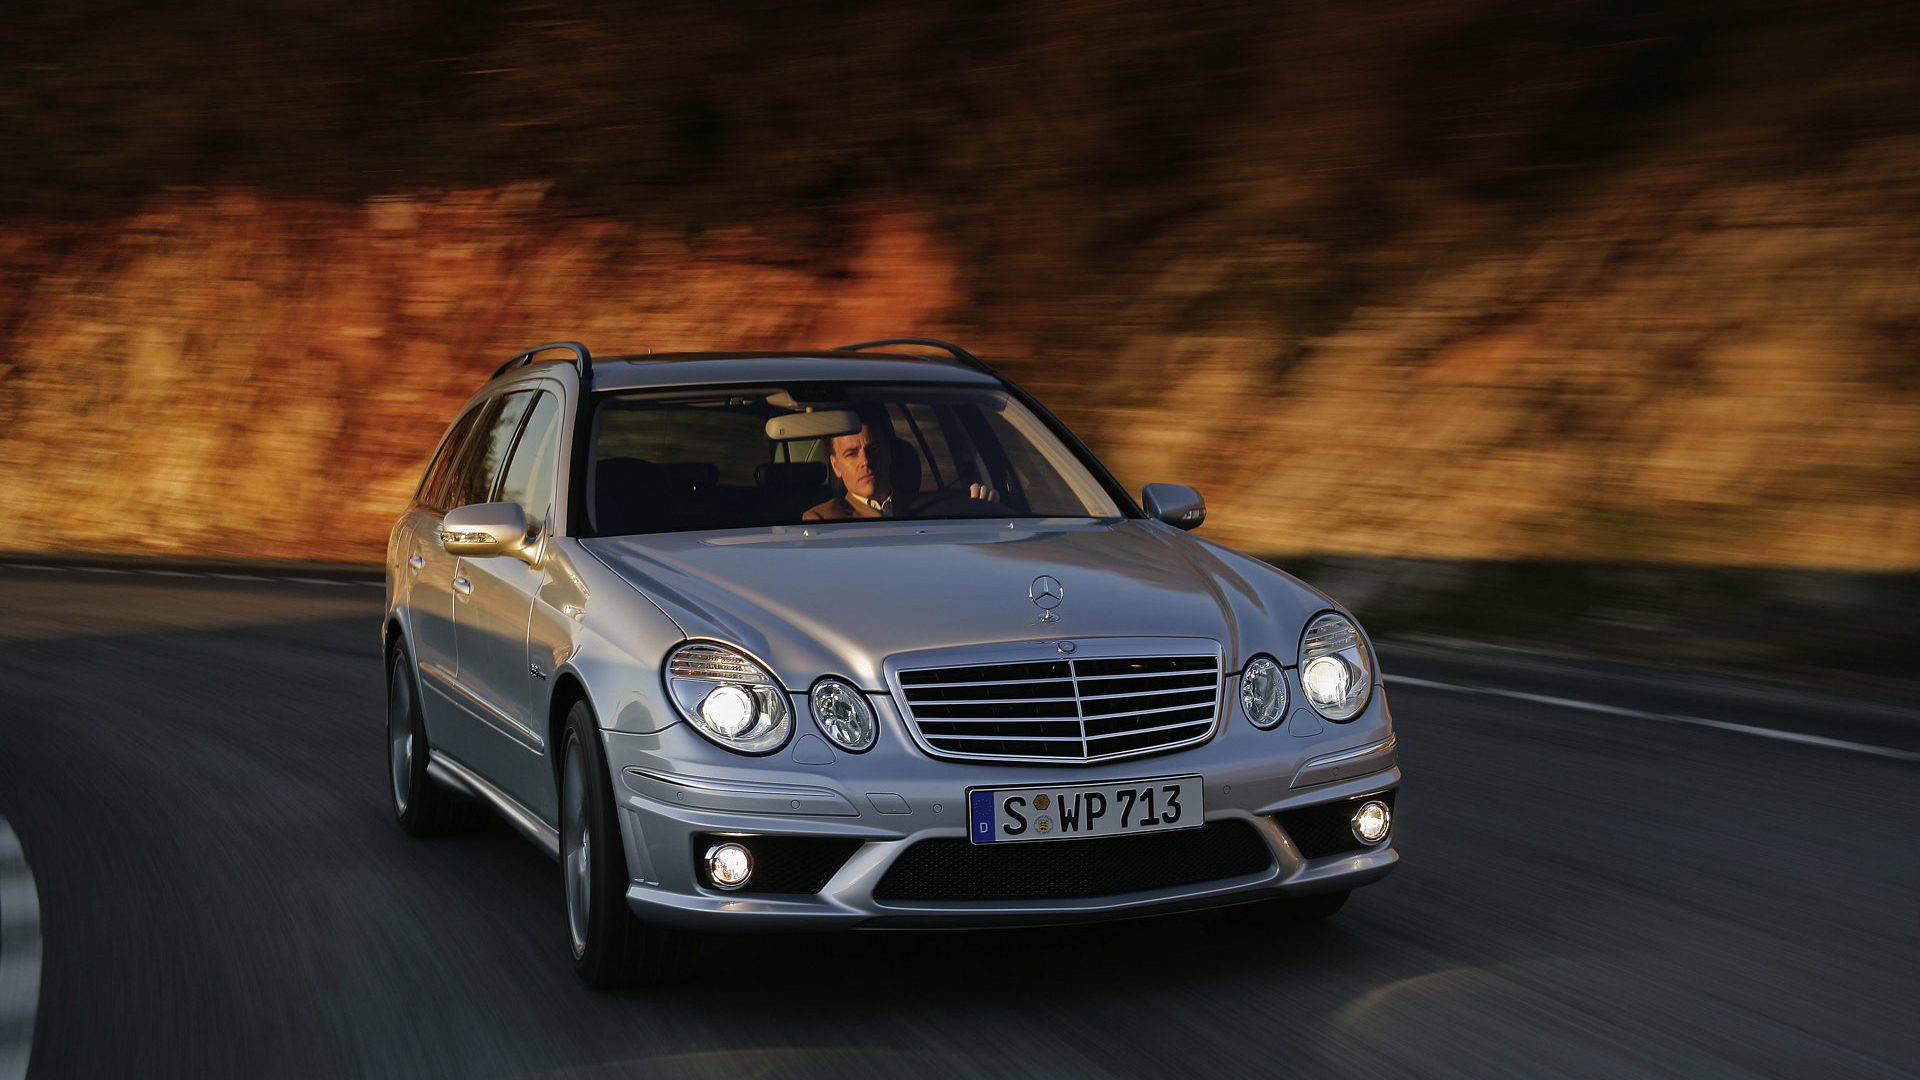 2007 Mercedes-benz E63 Amg Wagon 507 Horsepower - Benz E Class 2007 , HD Wallpaper & Backgrounds